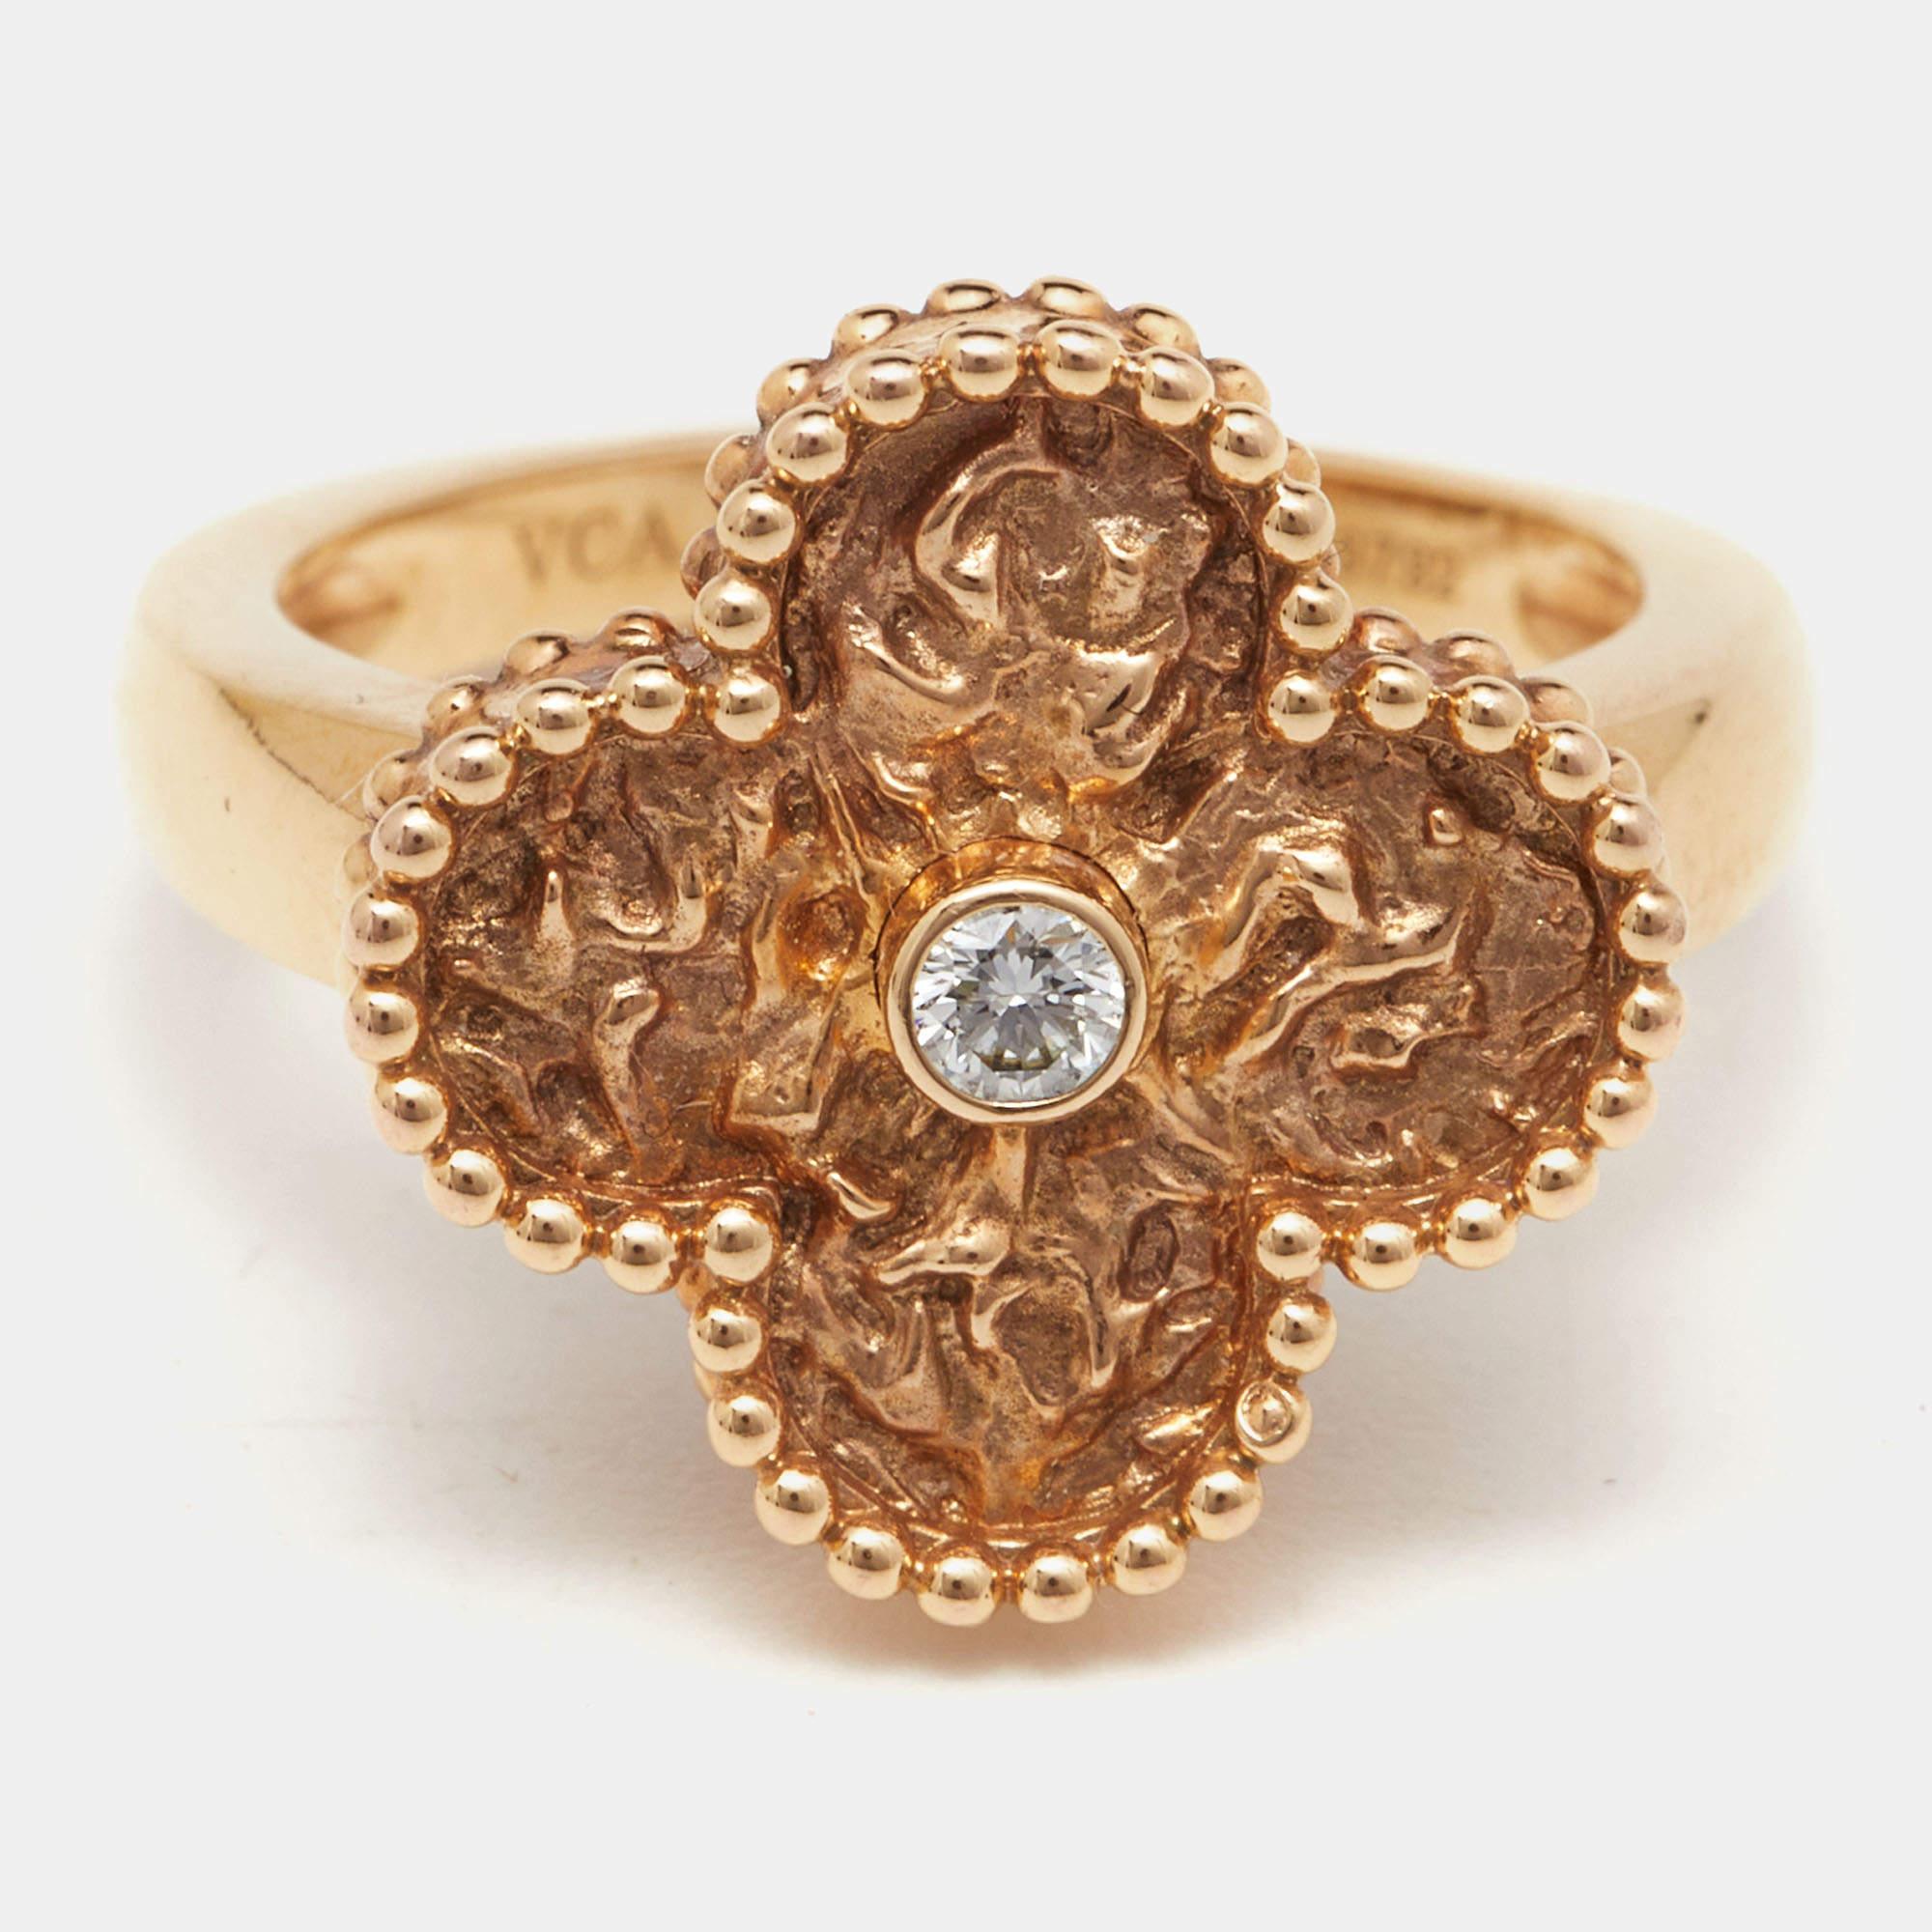 Le bijou Alhambra de Van Cleef & Arpels a été créé pour la première fois en 1968, et les créations Vintage Alhambra restent fidèles à son élégance intemporelle. Le motif emblématique du trèfle, puissant symbole de chance, est orné d'un sertissage de